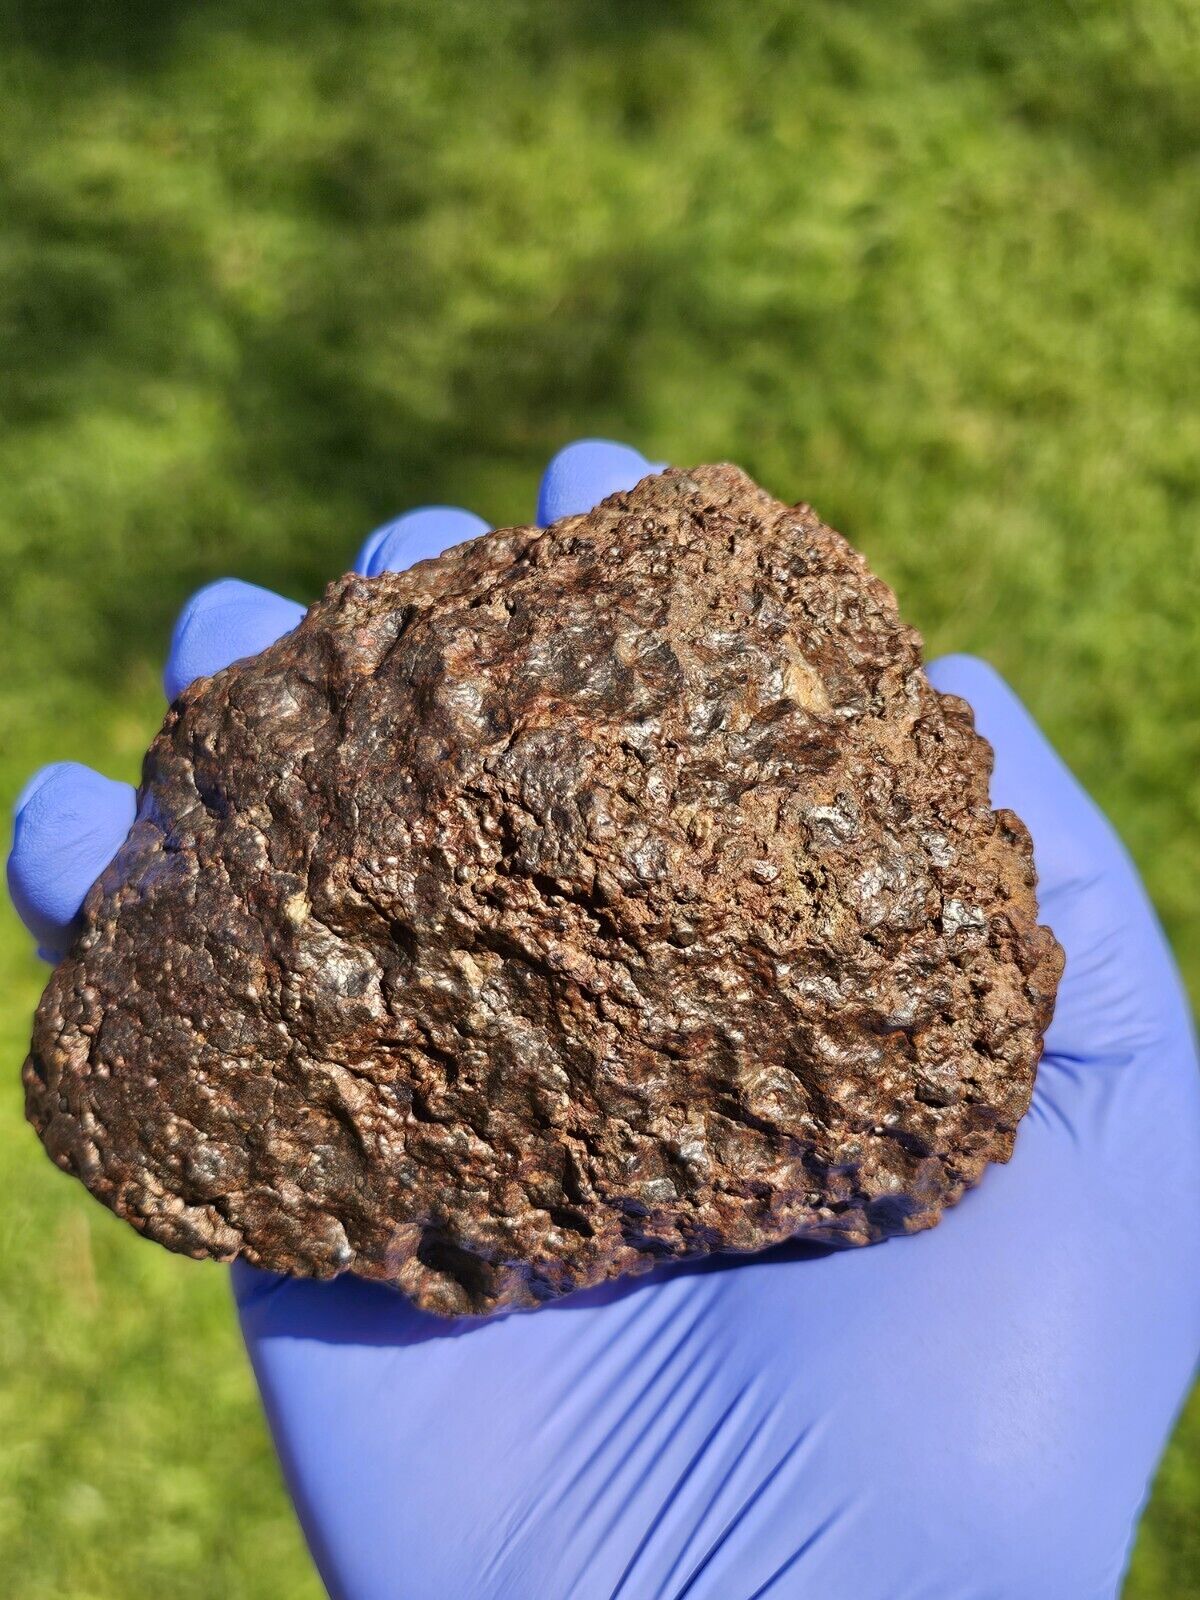 Meteorite**NWA Unc.; Flight Oriented Individual**787.20 grams, W/Regmaglypts